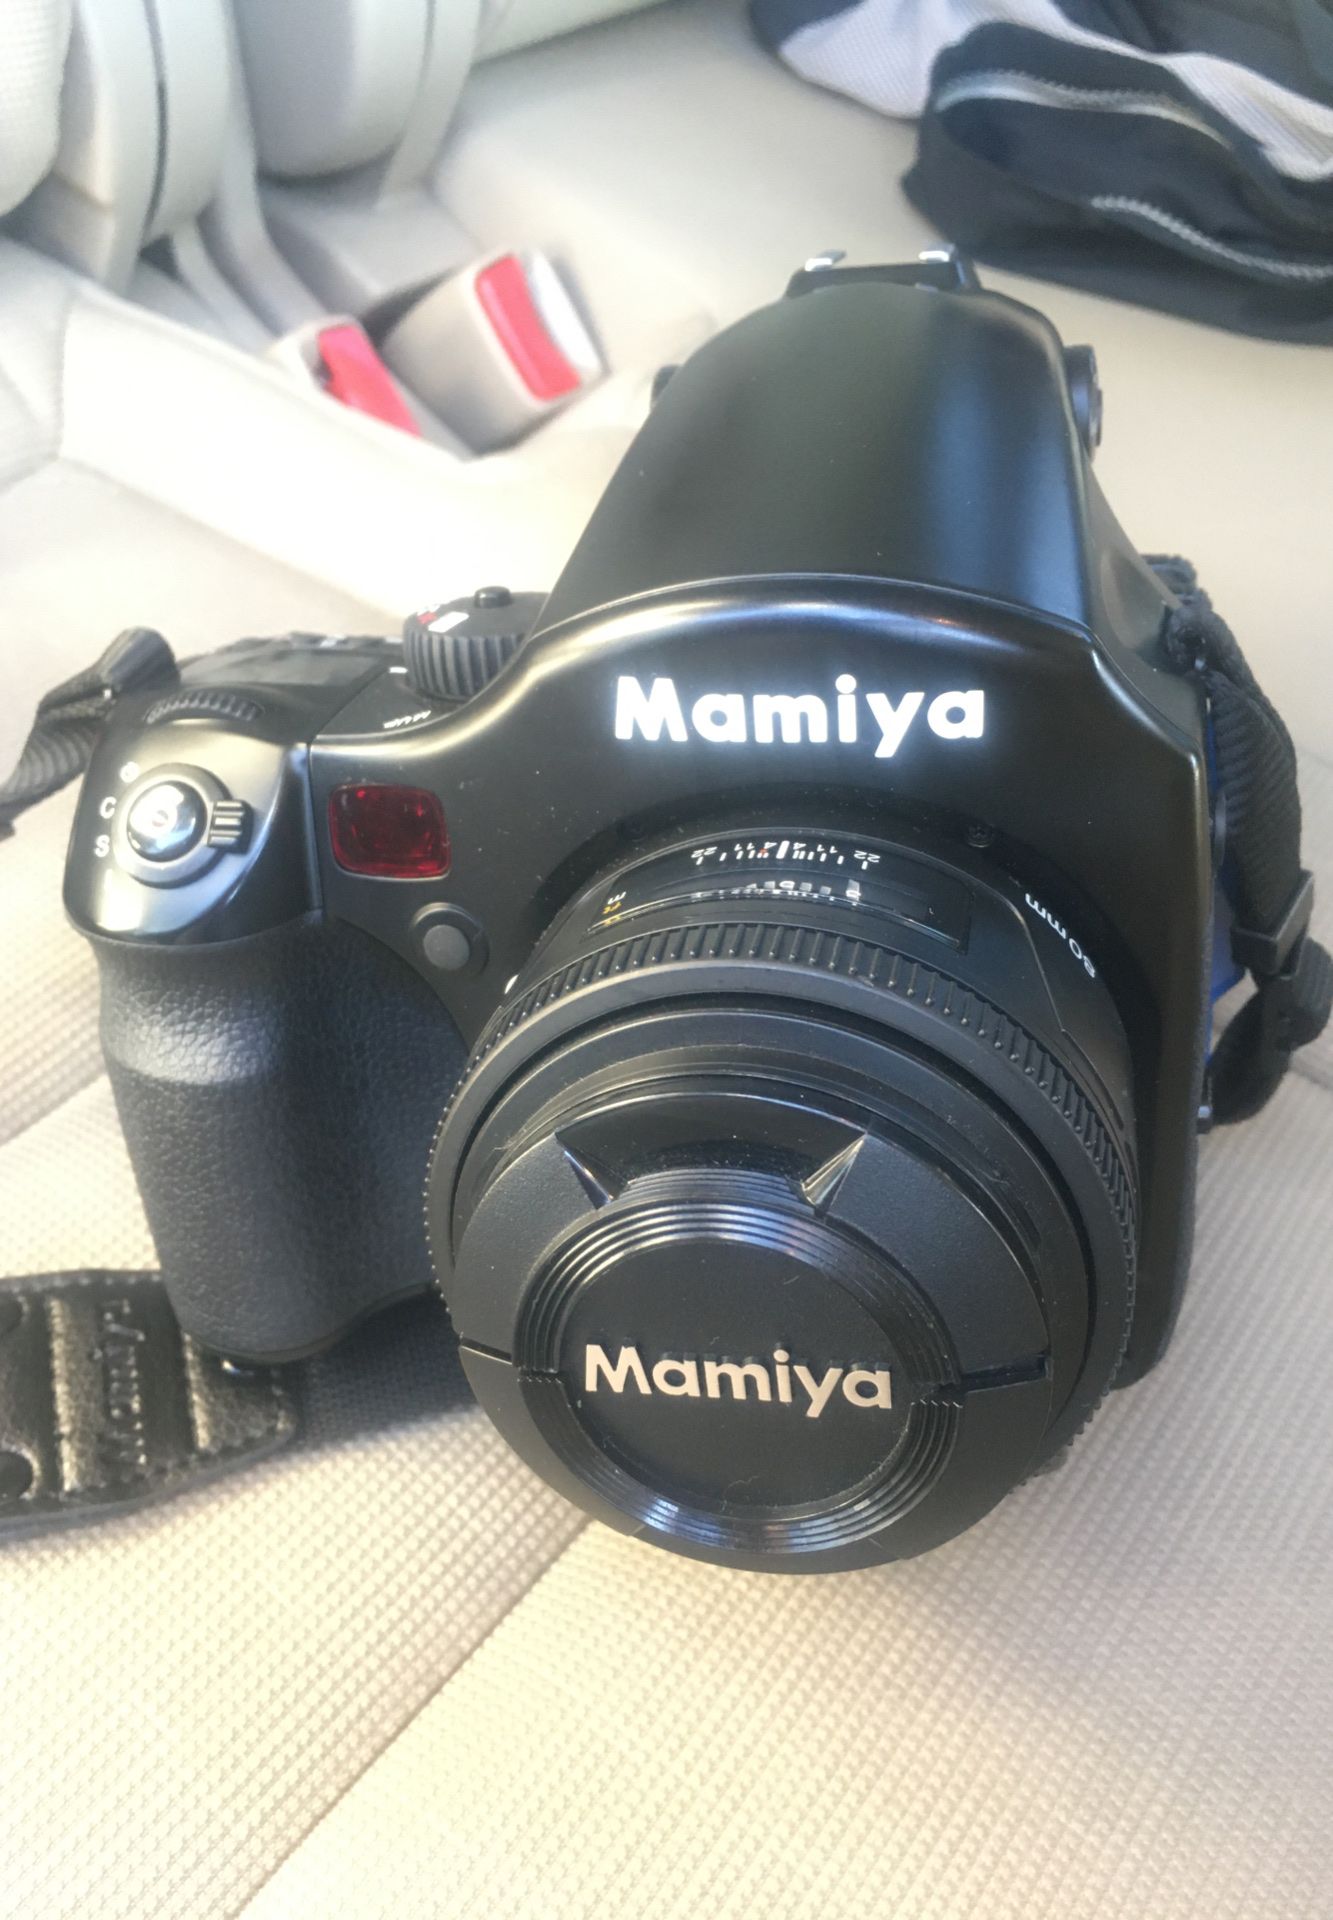 Mamiya 645AFD. Hardly used. Case included.